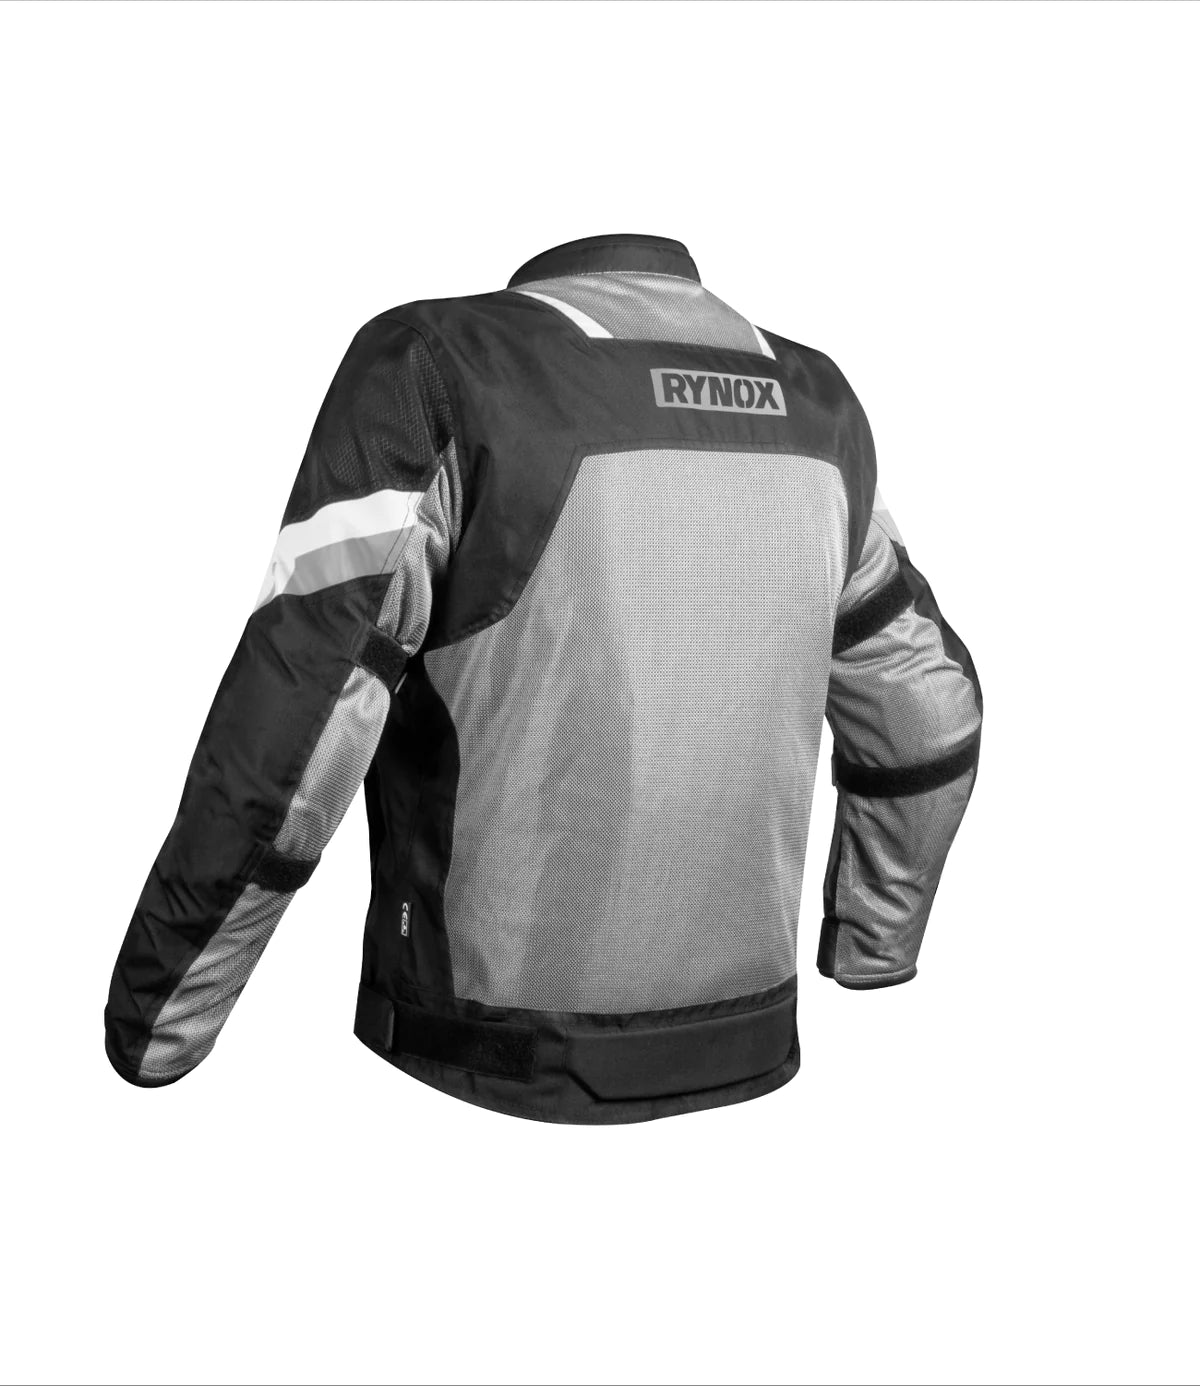 Rynox Helium GT 2 Jacket Rynox